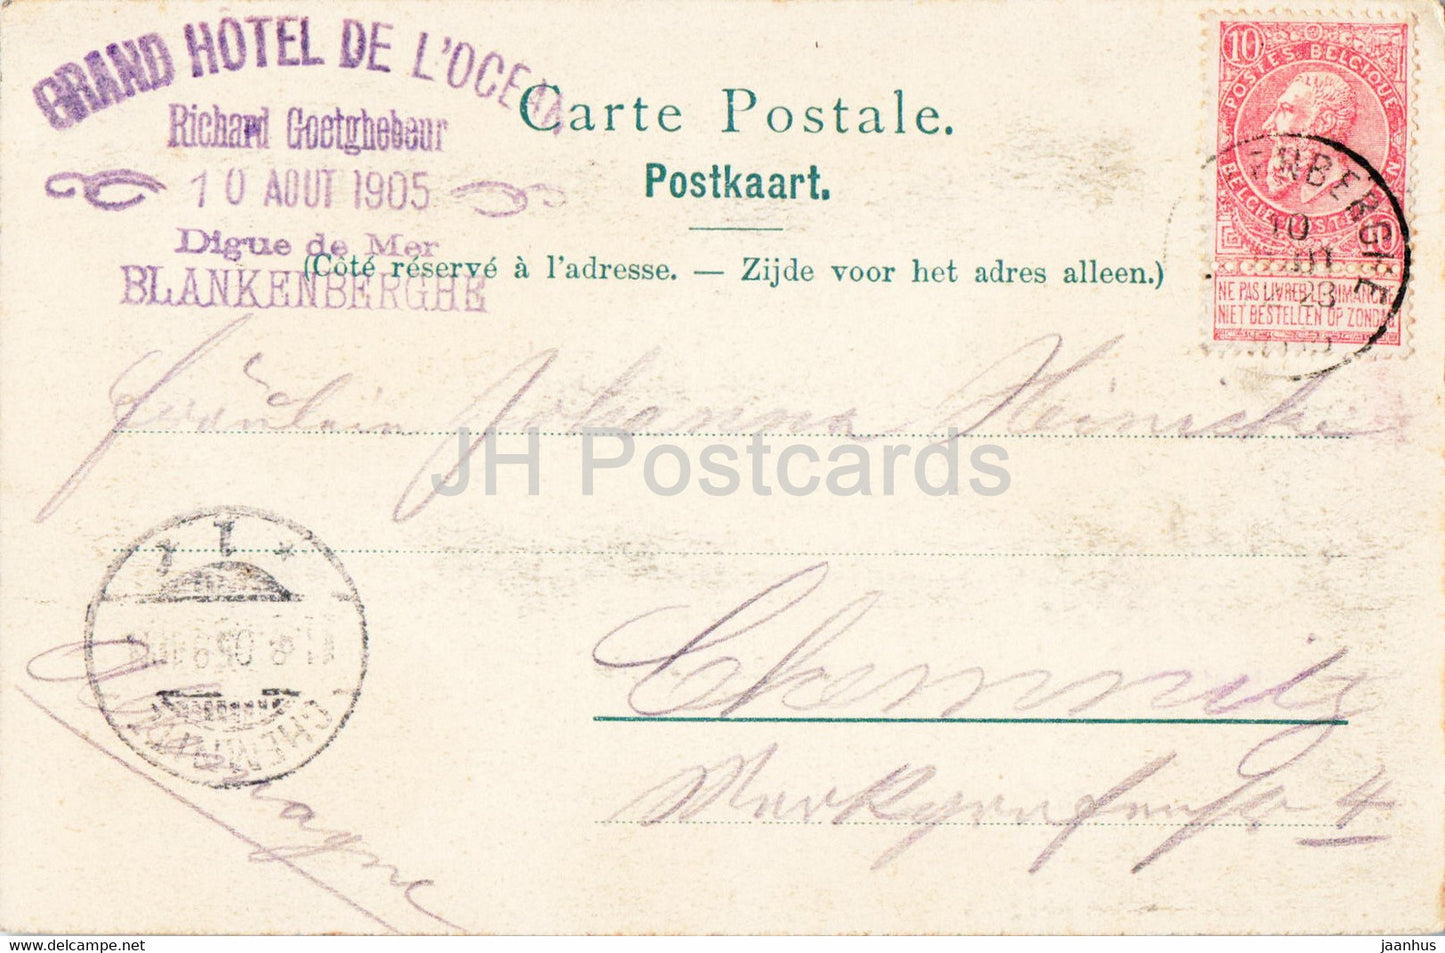 Blankenberge - Les Bains de Mer - Grand Hôtel de L'Océan - carte postale ancienne - 1905 - Belgique - occasion